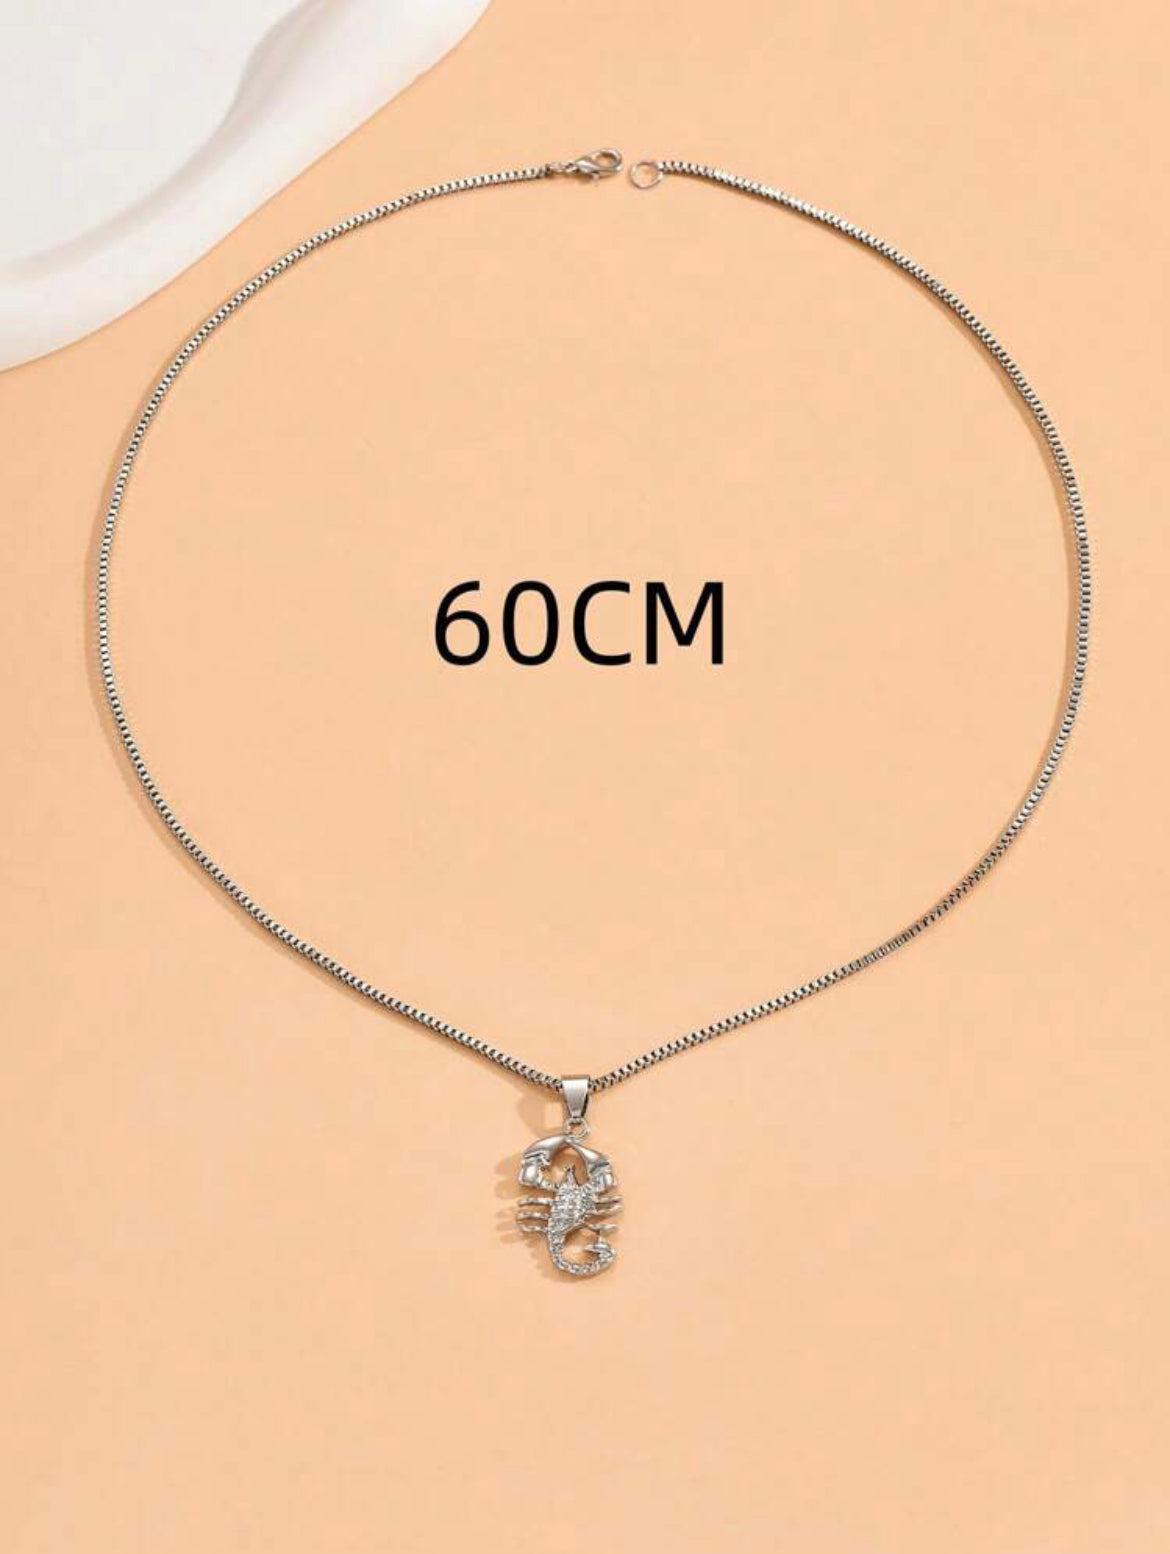 Scorpion Pendant Necklace for Men